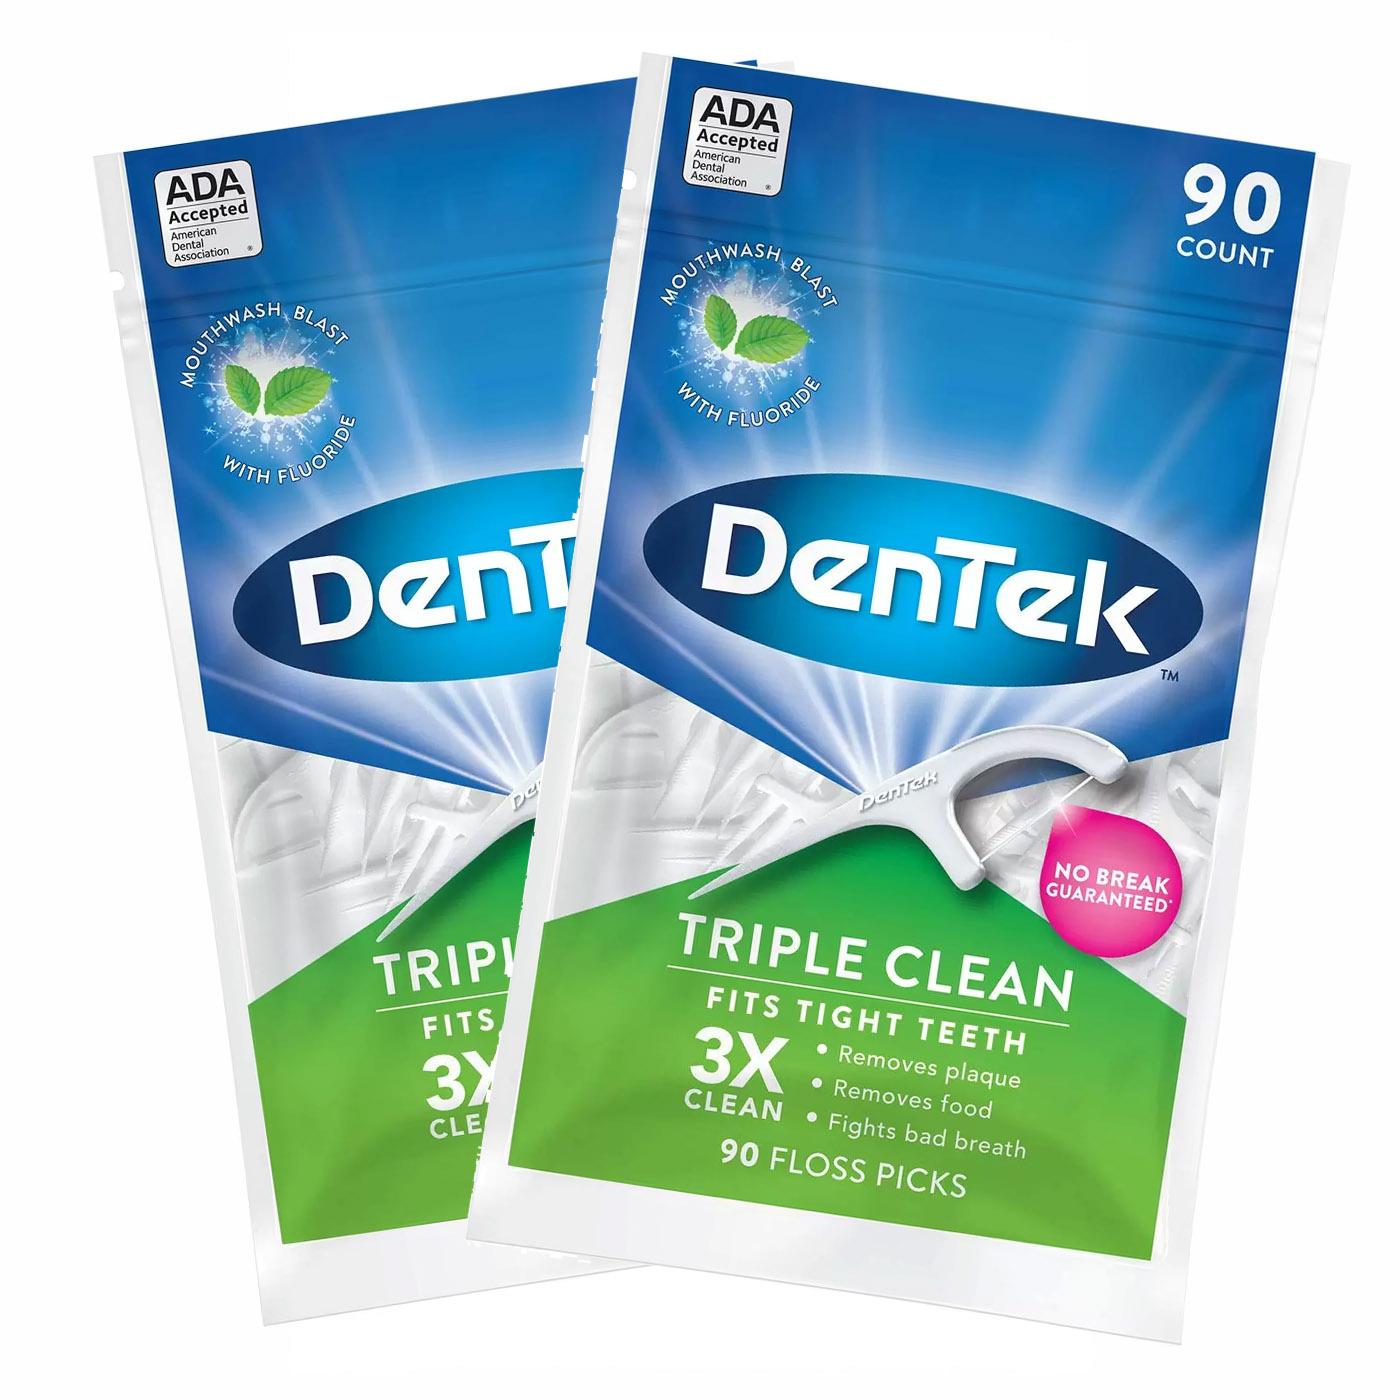 180 DenTek Triple Clean Floss Picks for $2.87 Shipped